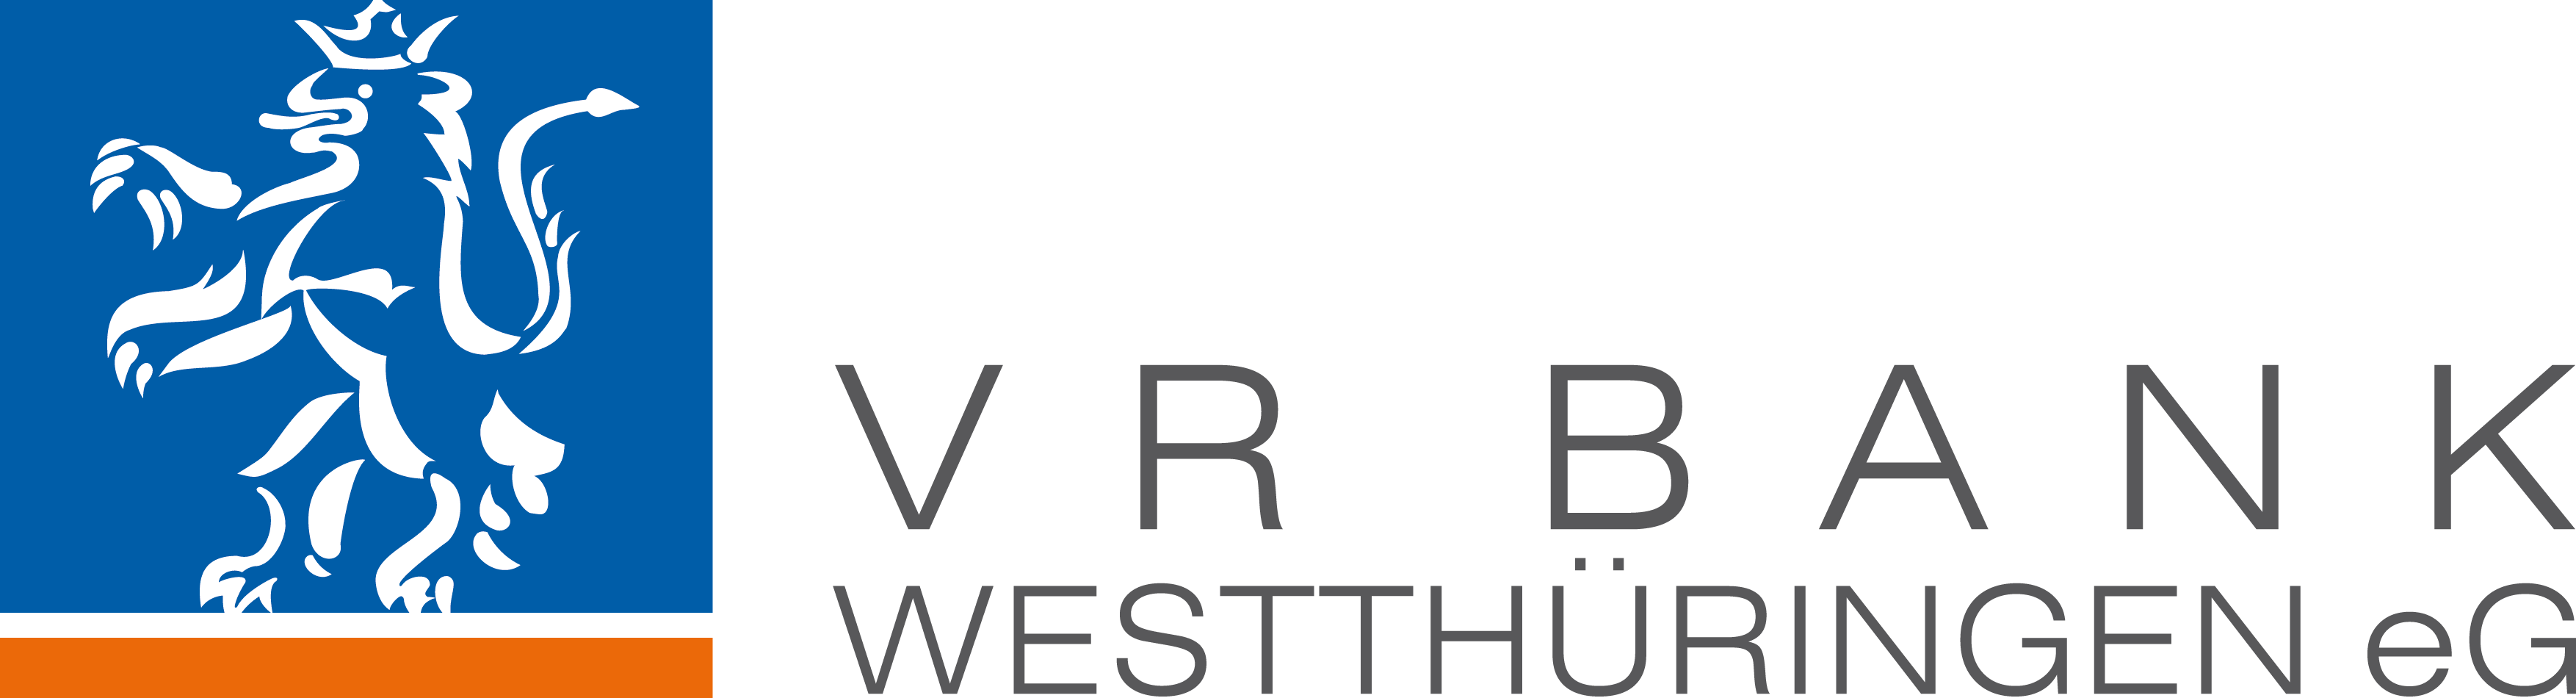 VR Bank Westthüringen eG